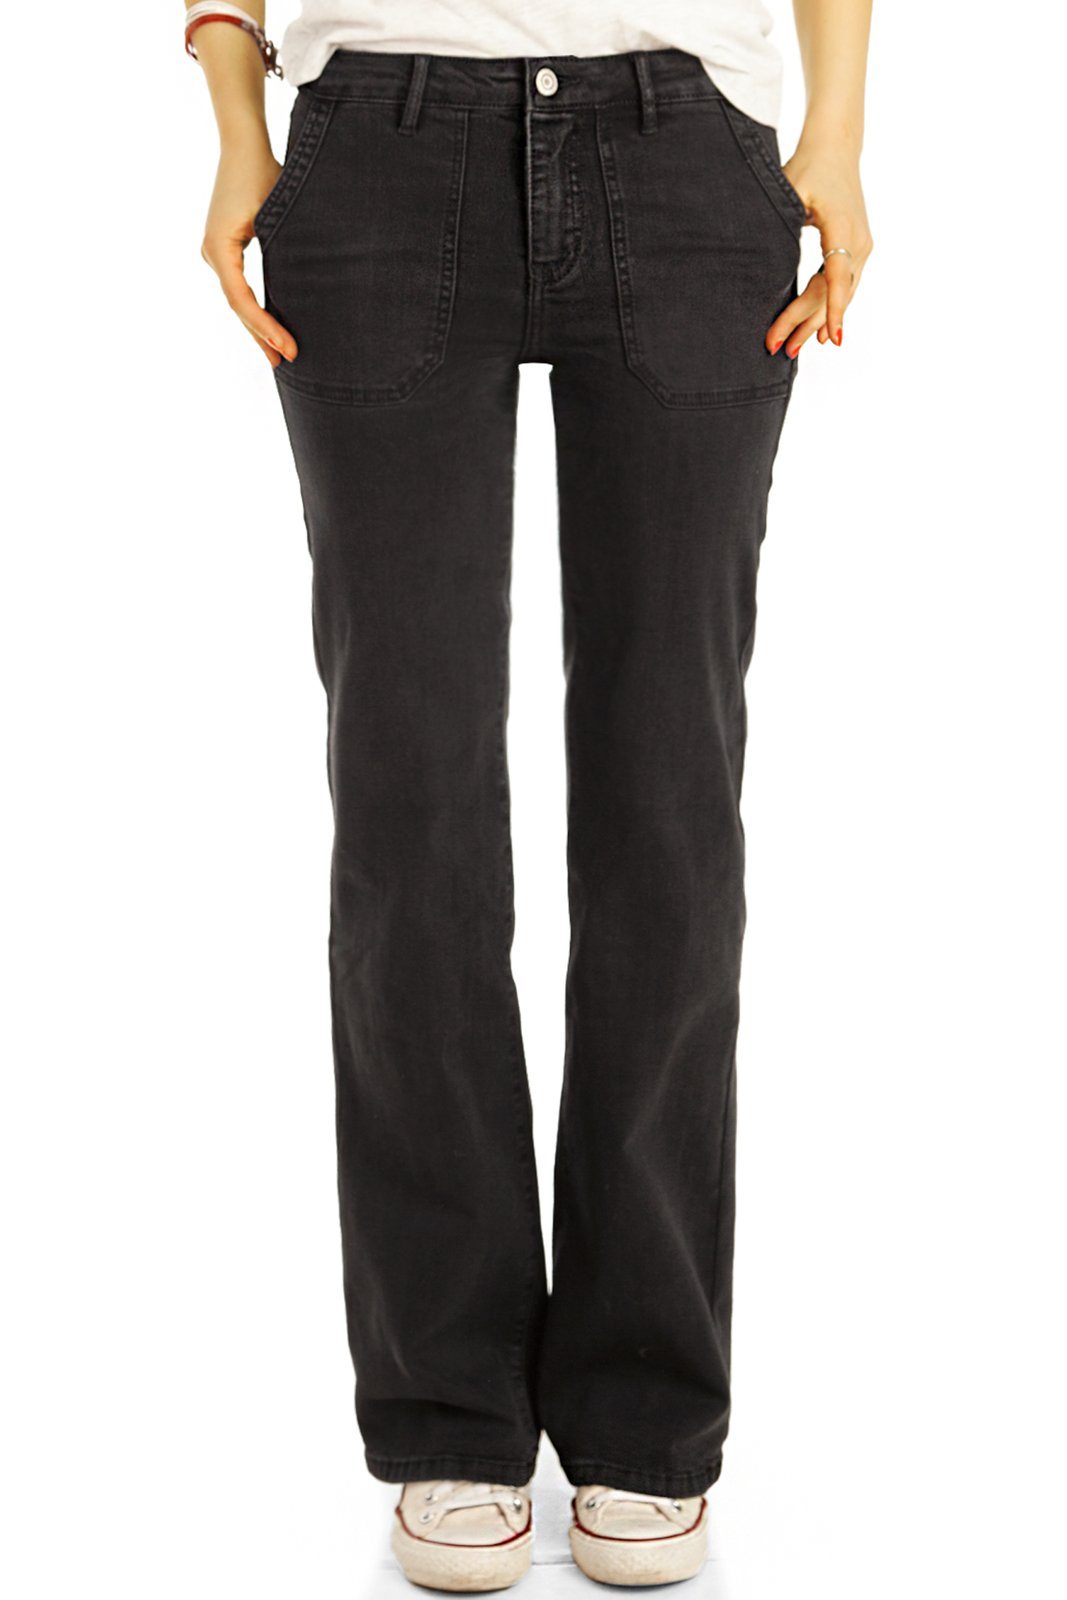 be Bootcut-Jeans straight Passform Jeans, medium Damen j31k Hosen styled Stretch-Anteil, 5-Pocket-Style - waist mit - schwarz Bootcut